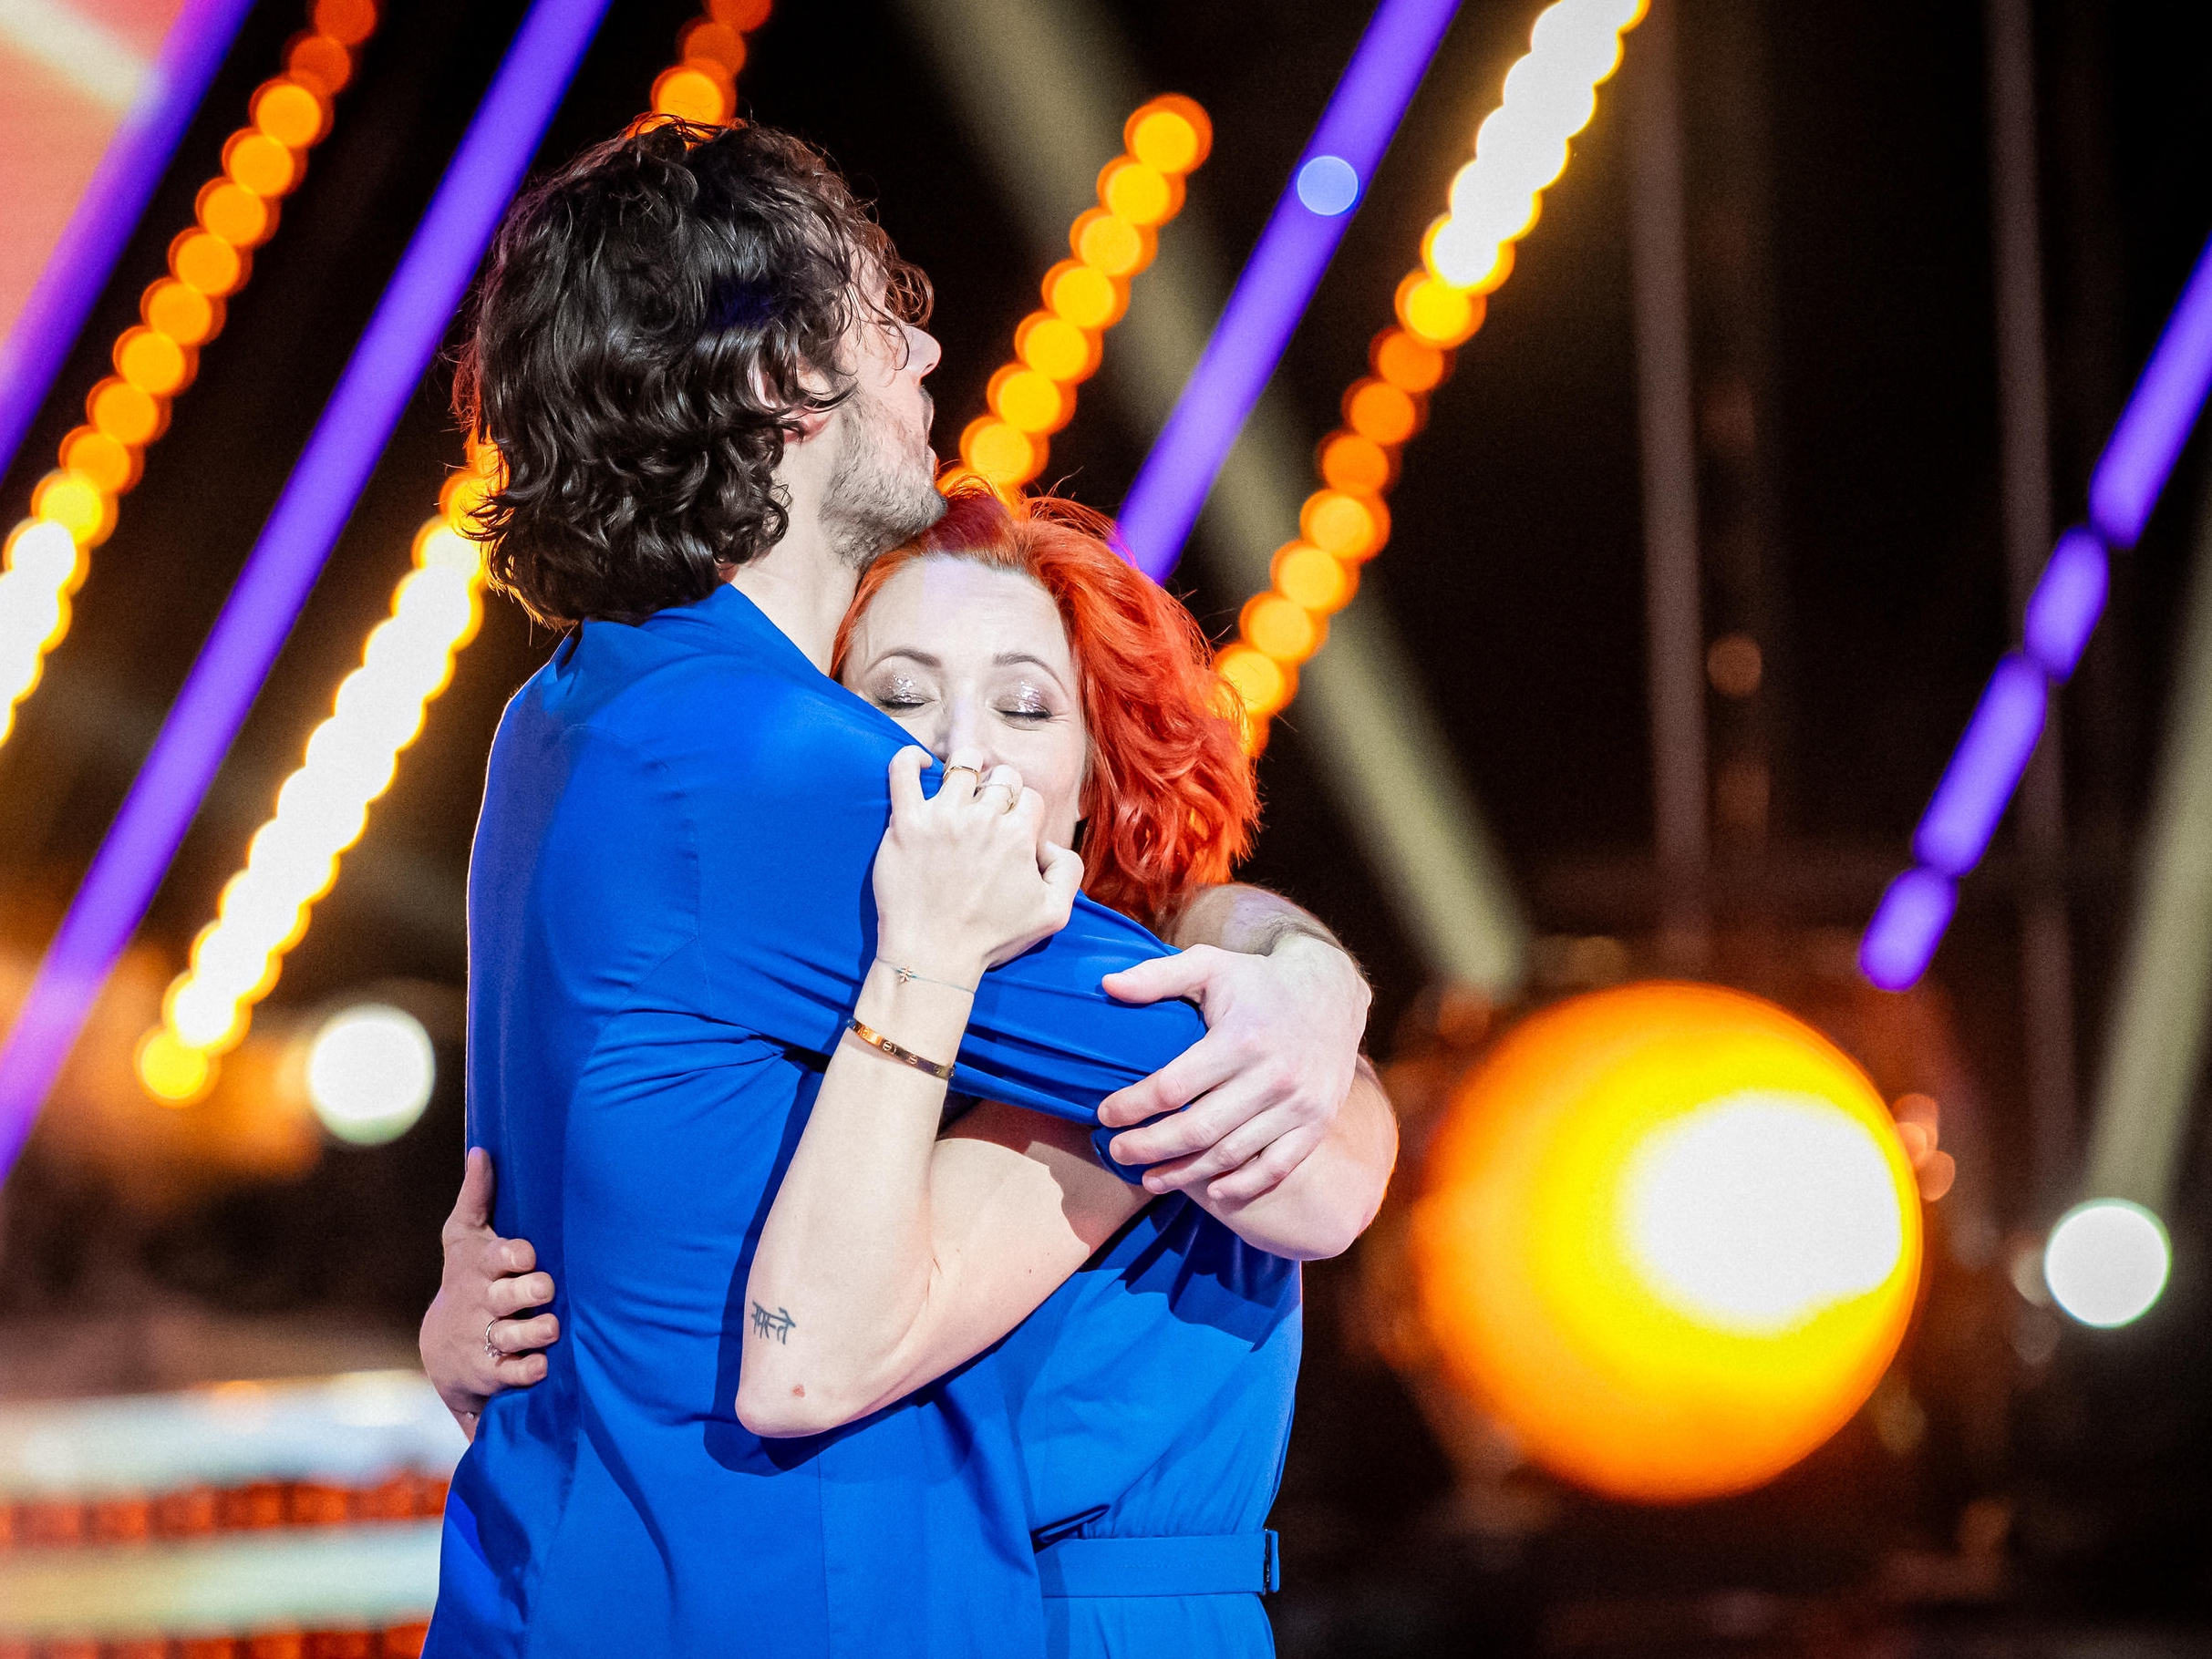 Natasha St-Pier et Anthony Colette ont remporté ce vendredi soir le concours de «Danse avec les stars» sur TF1, au terme d'une saison explosive. TF1/Pixeline Photographie